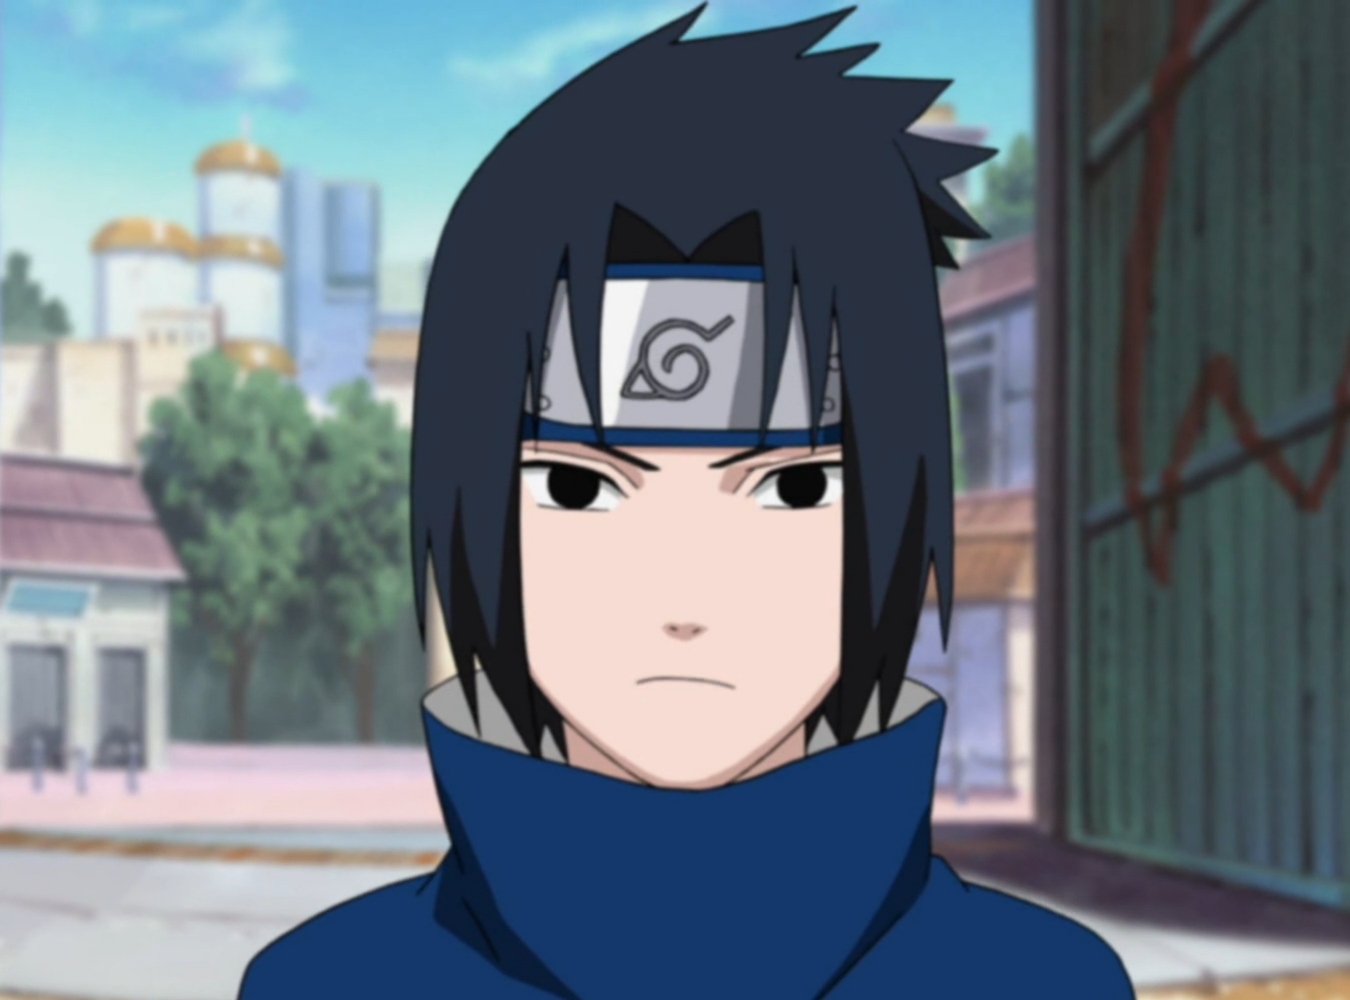 2. "Sasuke Uchiha" from Naruto - wide 4